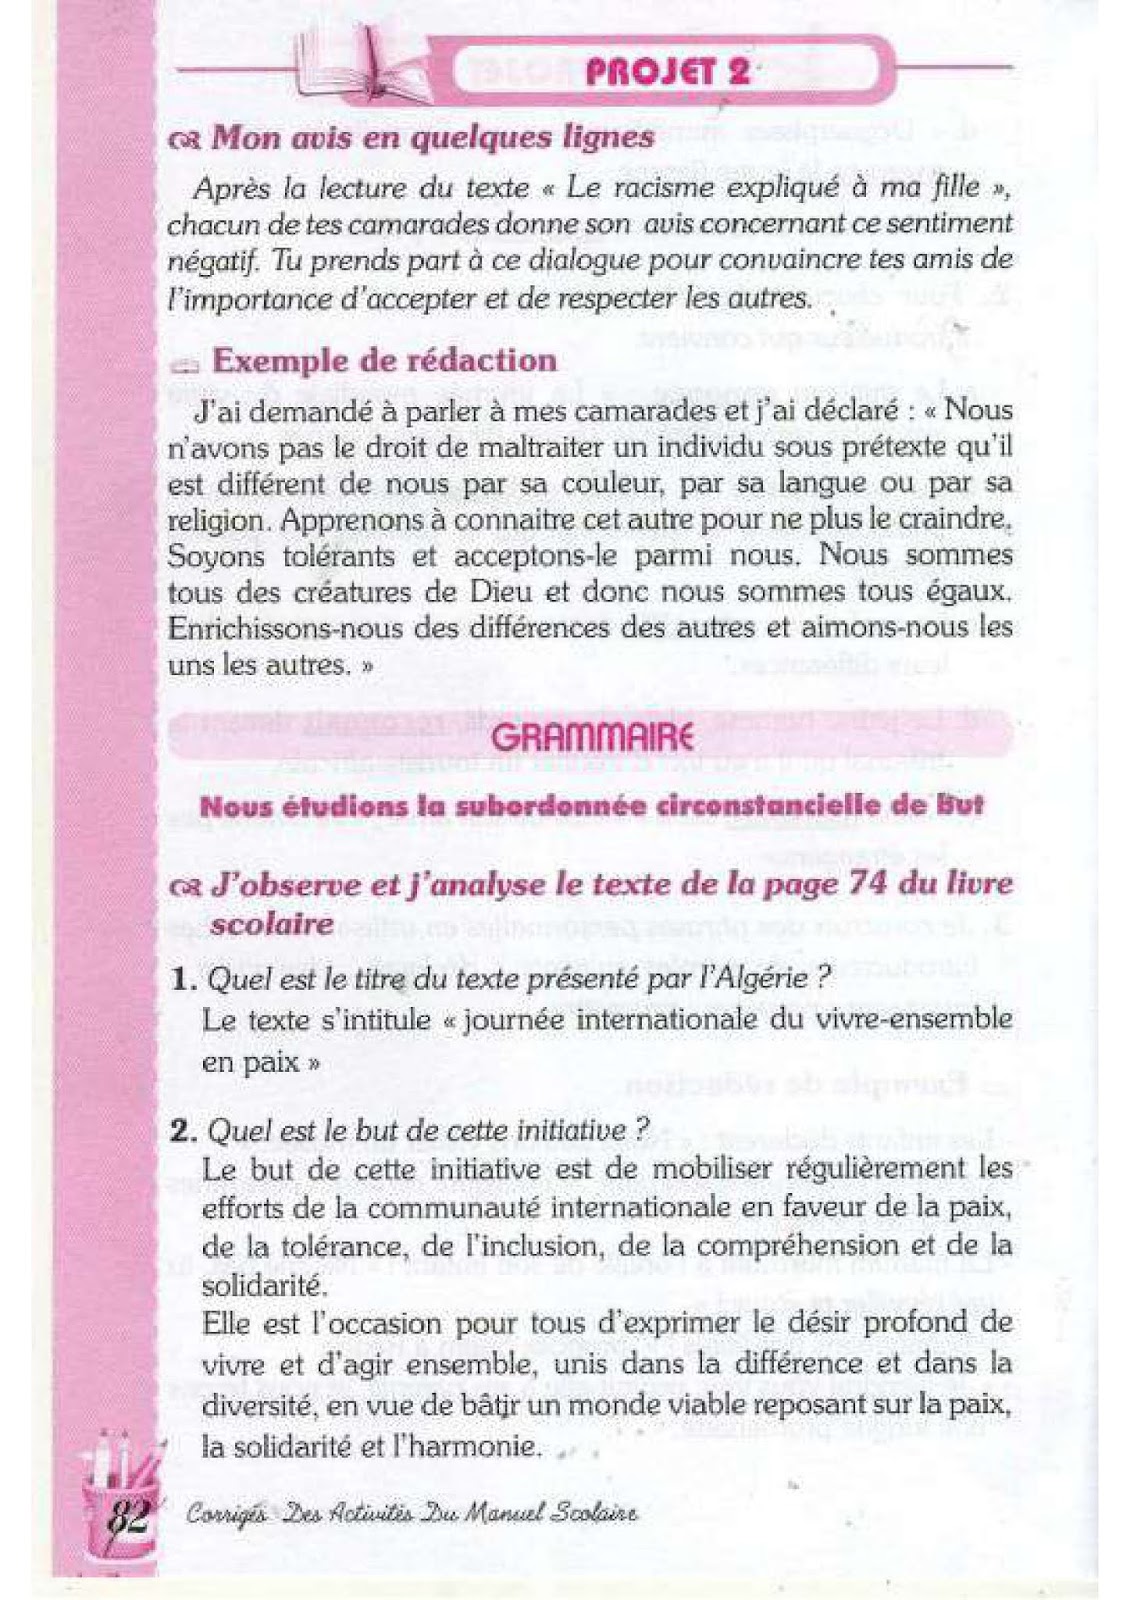 حل تمارين صفحة 74 الفرنسية للسنة الرابعة متوسط - الجيل الثاني